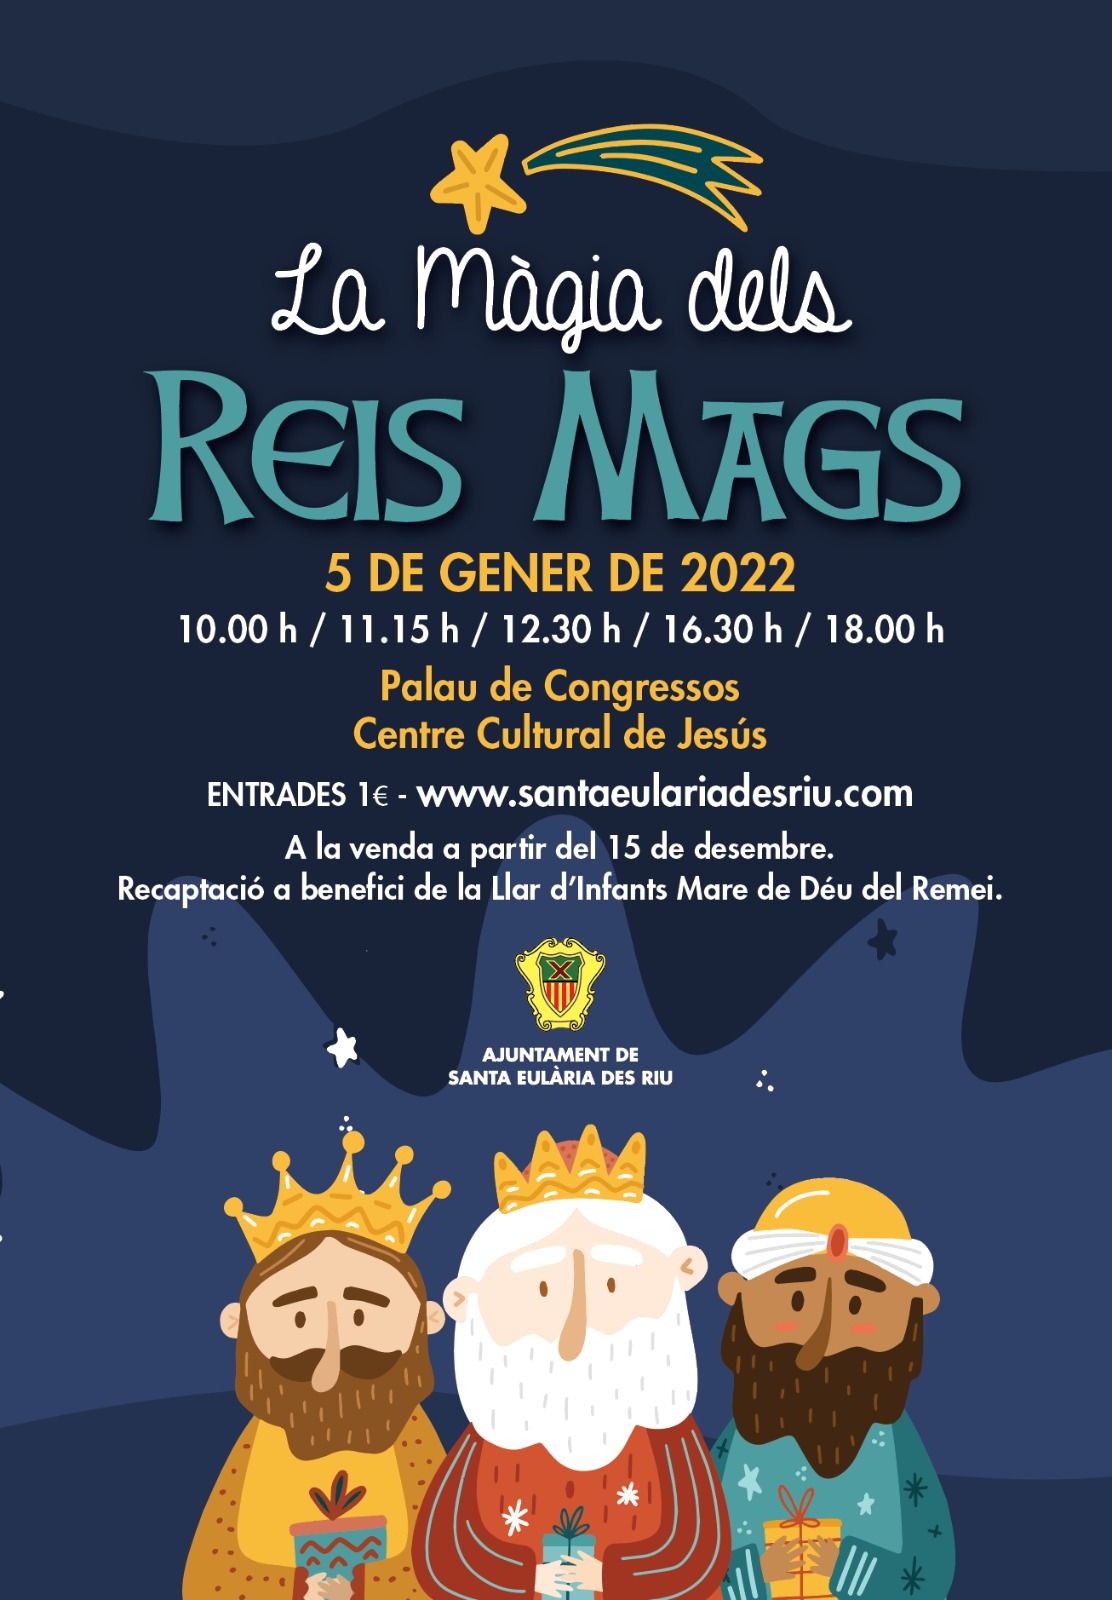 Santa Eulària pone a la venta las entradas al espectáculo ‘La màgia dels Reis Mags’ en el Centre Cultural de Jesús y el Palacio de Congresos de Ibiza